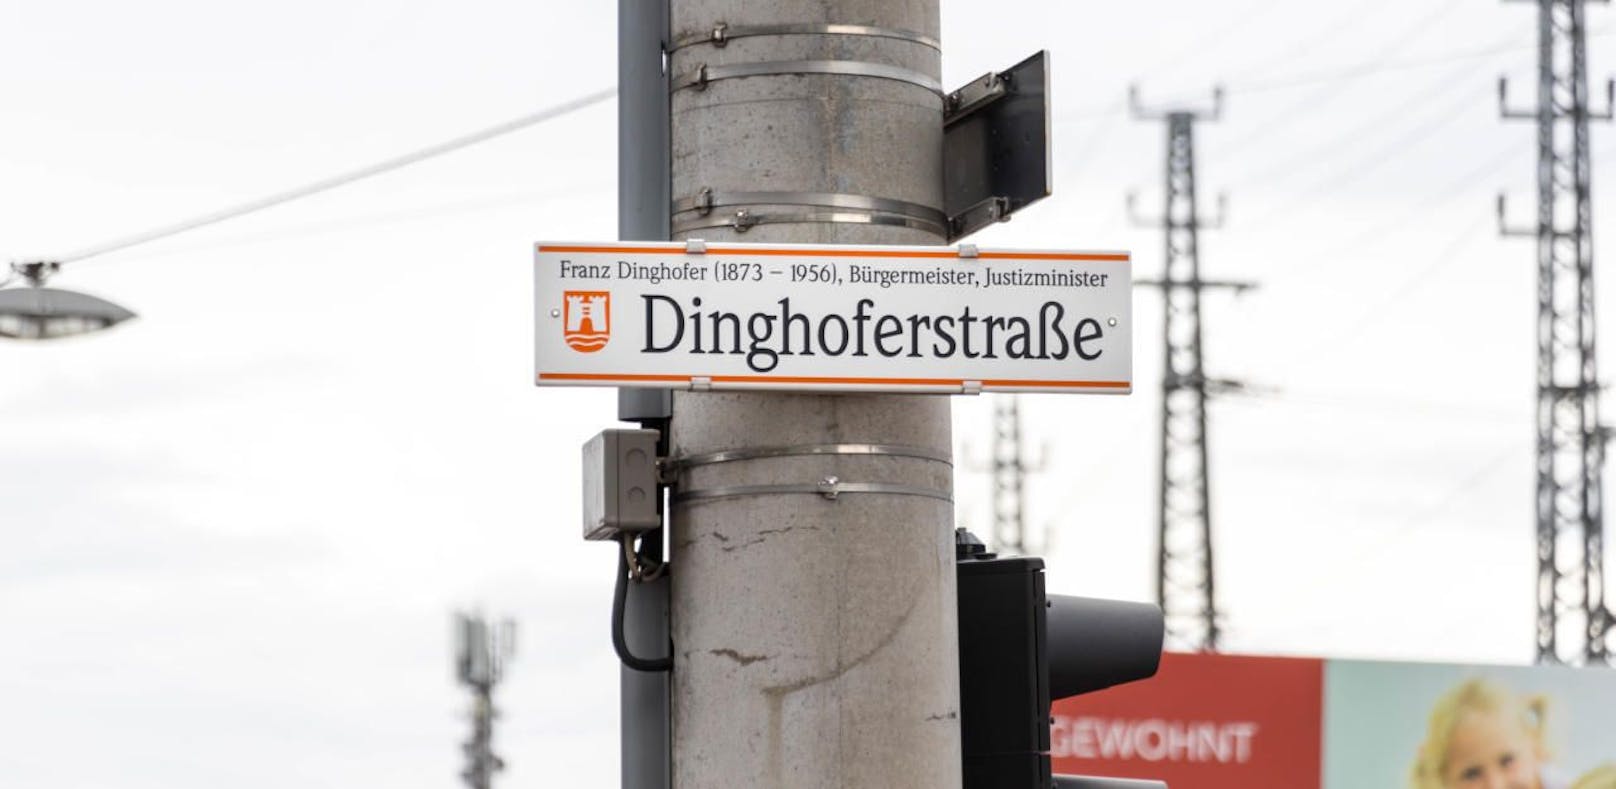 Die Dinghoferstraße ist umstritten, weil der Ex-Bürgermeister Franz Dinghofer Mitglied der NSDAP war. Und sie ist nach einem Mann benannt.